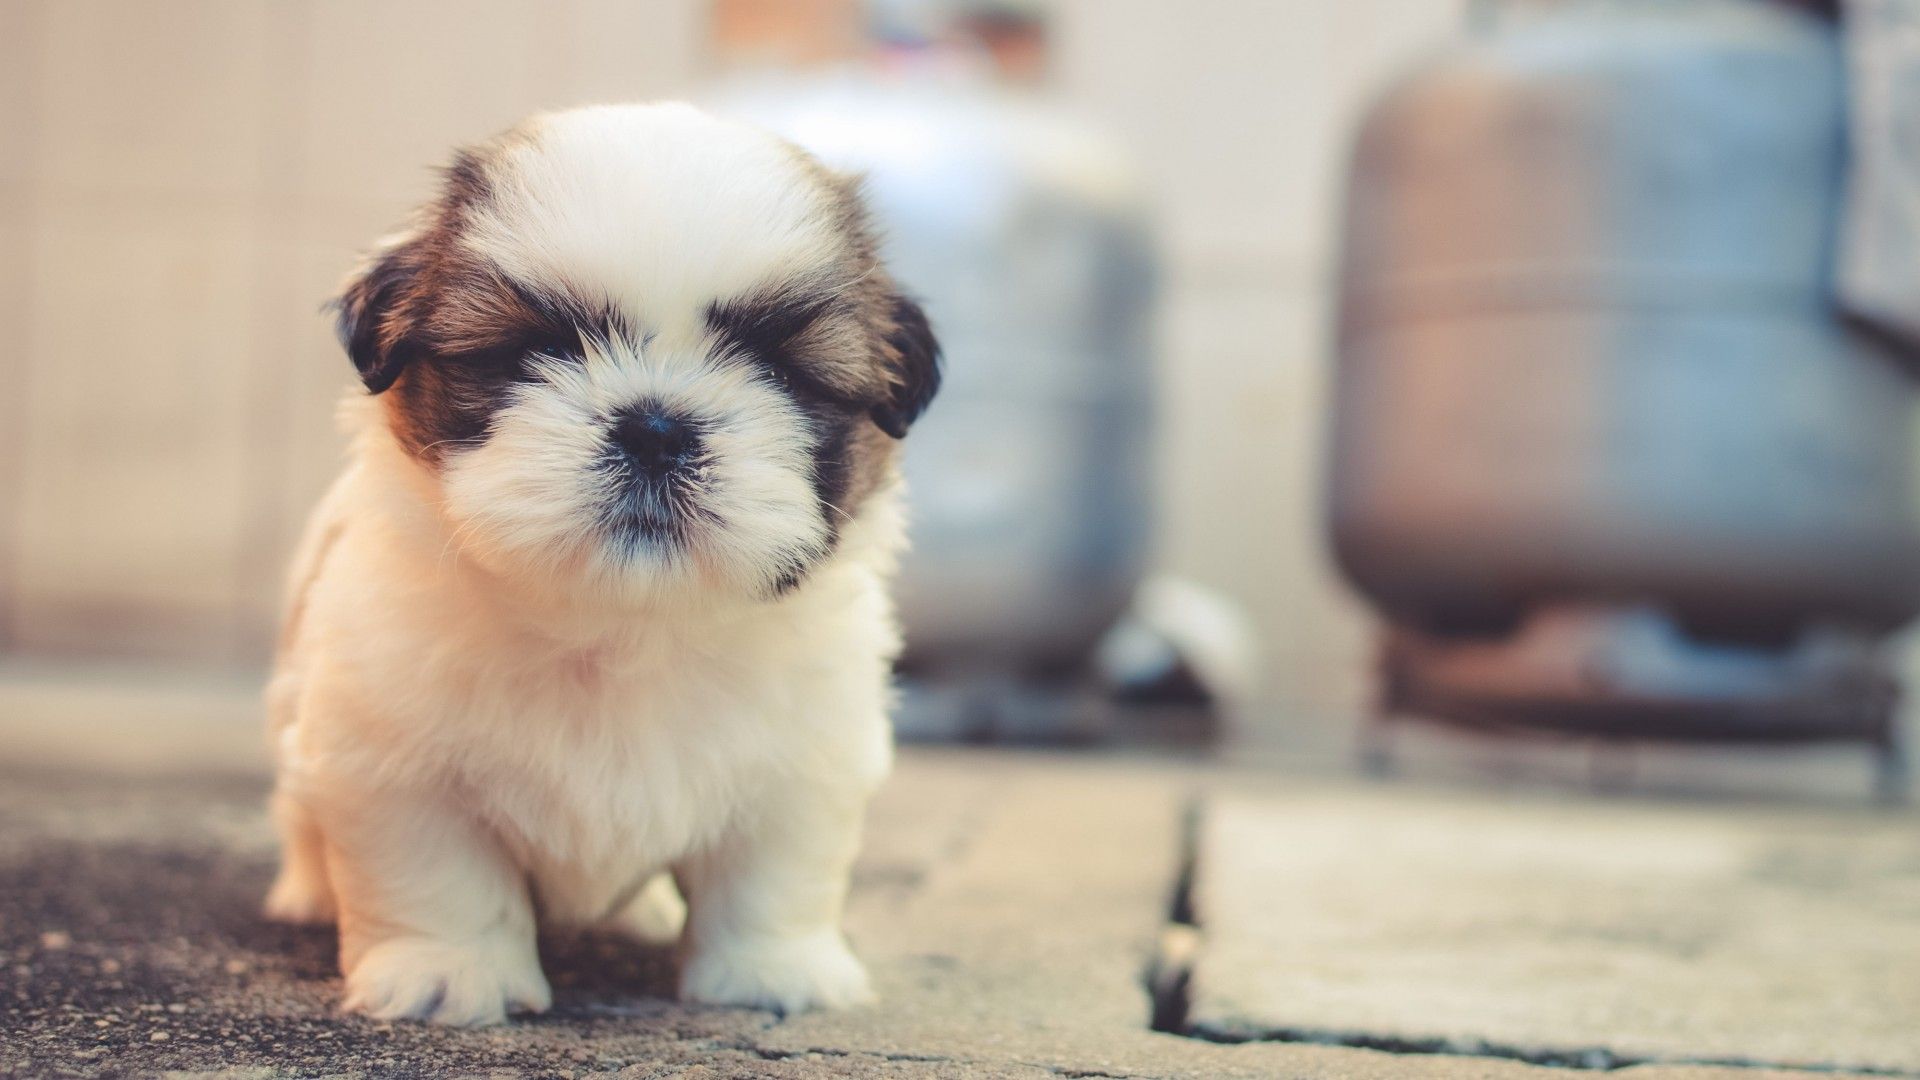 Cute puppies 4K Wallpaper, Saint Bernard, Cute dog, Adorable, Fluffy dog, Animals